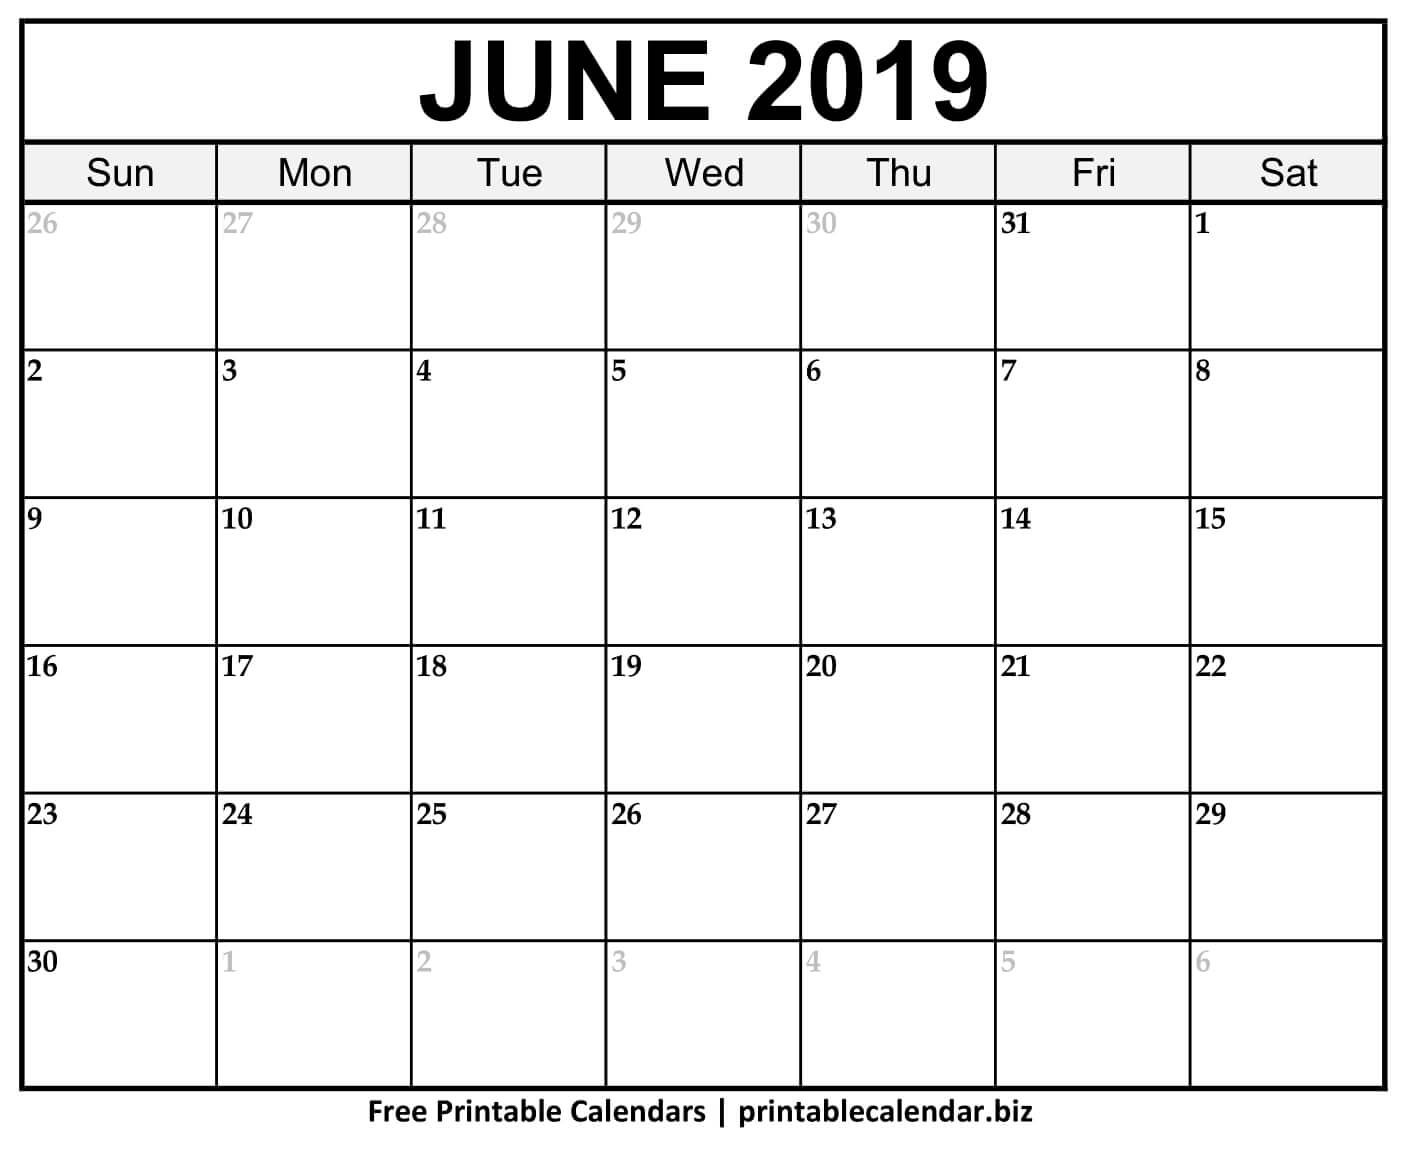 Free 5 June 2018 Calendar Printable Template Source